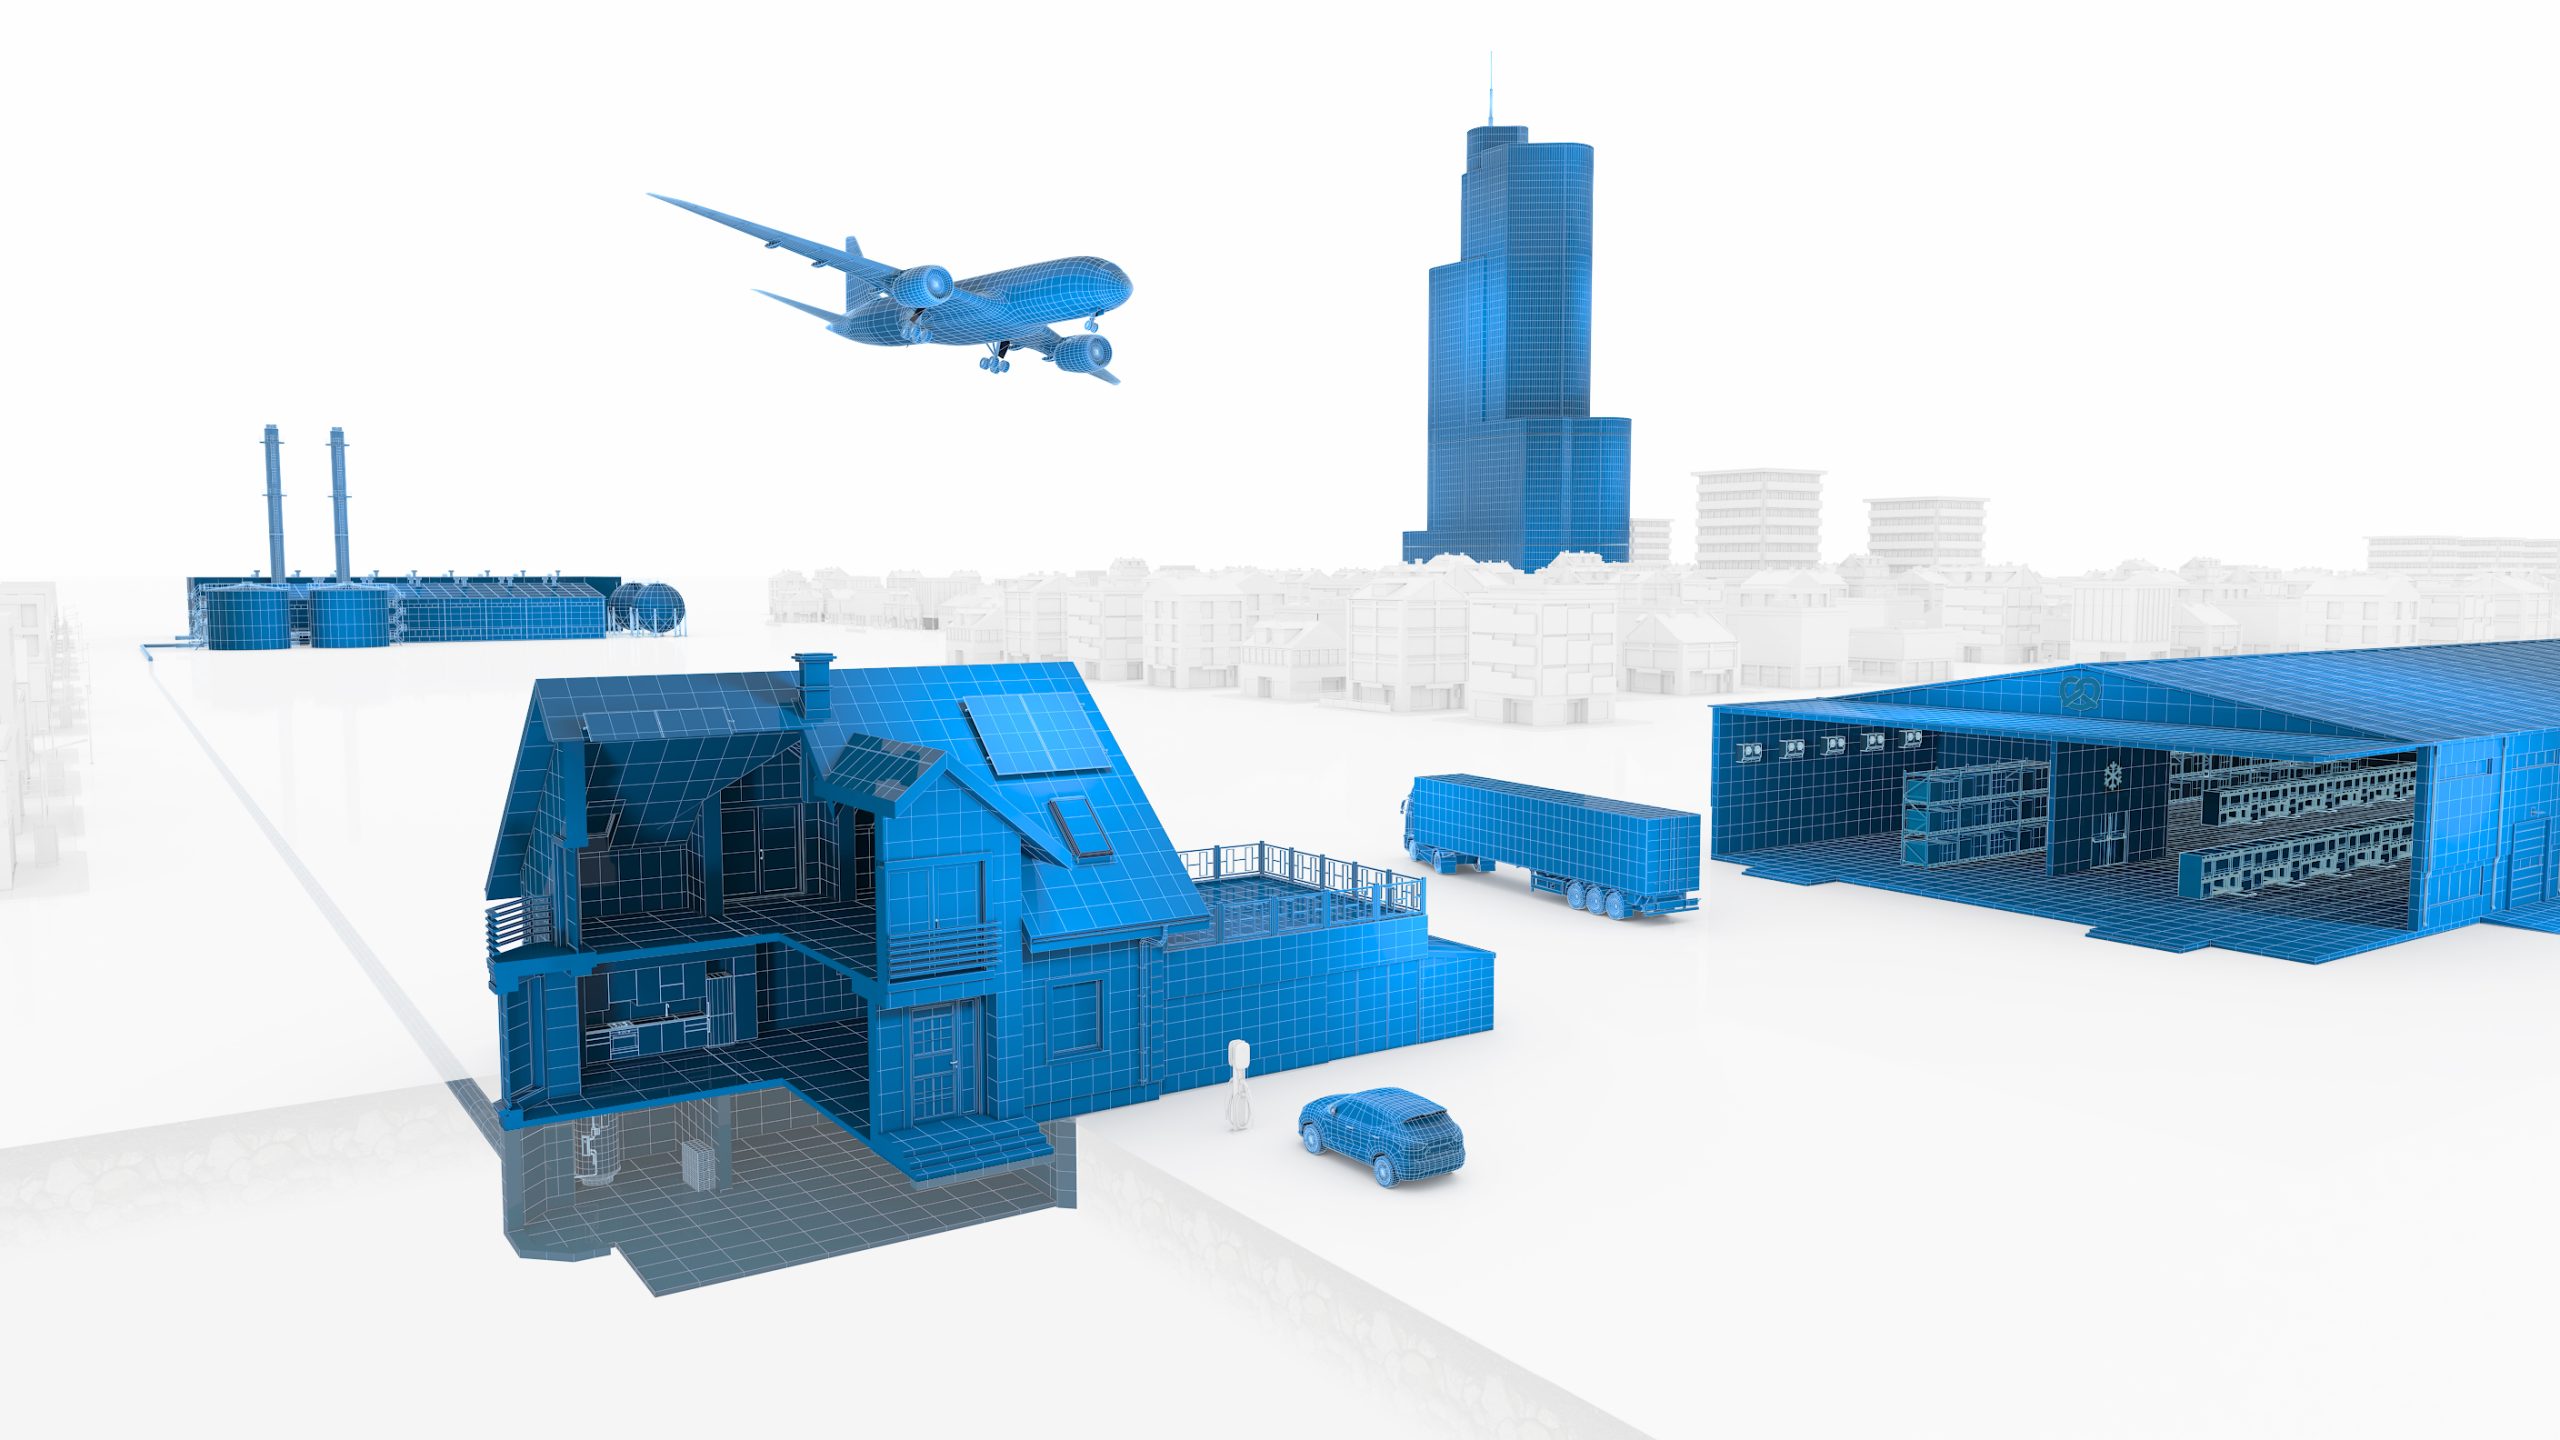 Das Bild zeigt eine konzeptionelle Grafik von verschiedenen Transport- und Industrieanlagen in Blau, mit hervorgehobenen Details auf einem undeutlichen weißen Hintergrund.